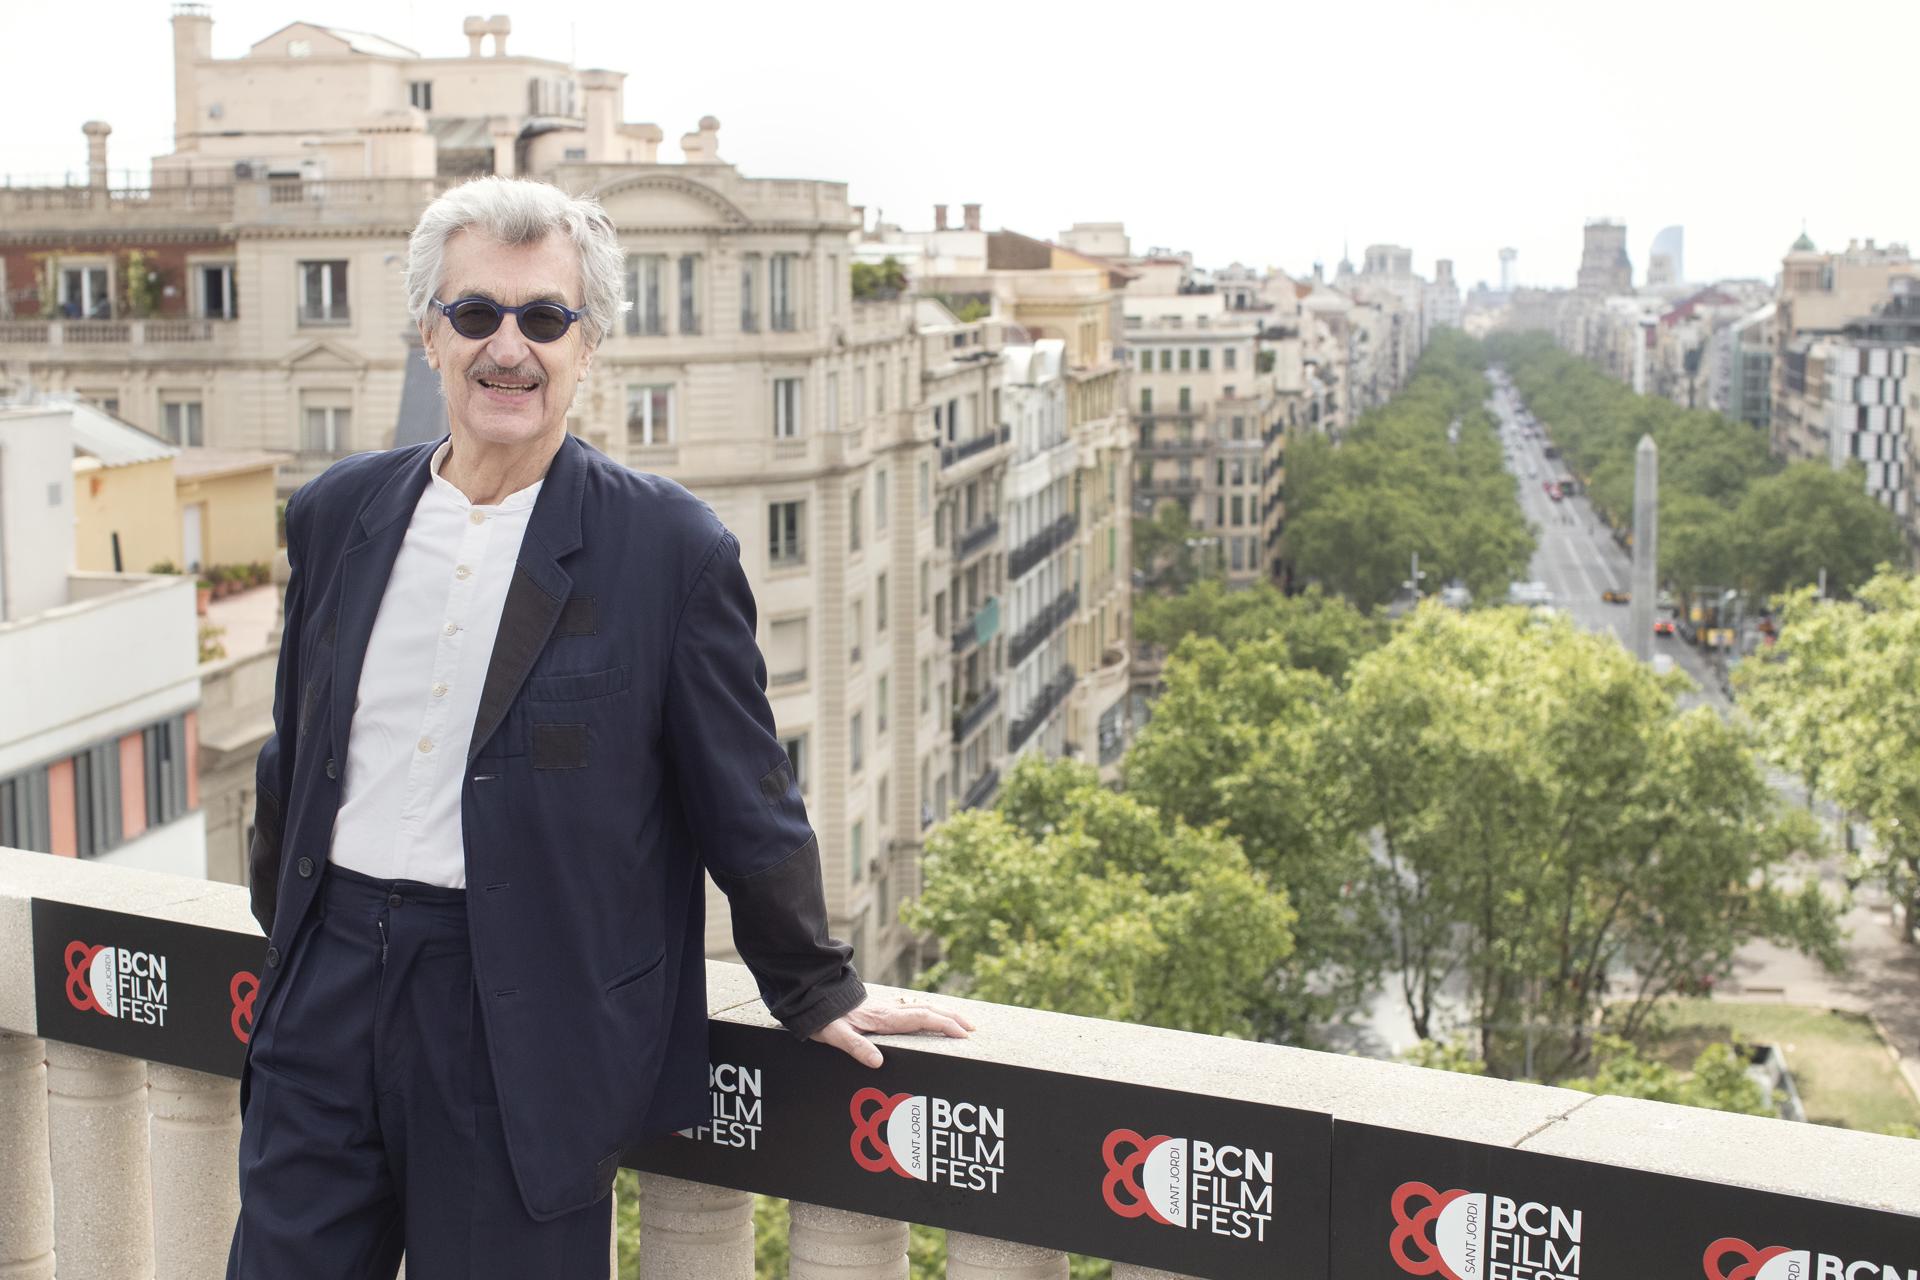 El cineasta alemán Wim Wenders, director de filmes com "París, Texas", "Cielo sobre Berlín" o "Buena Vista Social Club", ofreció este viernes una conferencia de prensa en Barcelona tras recibir el Premio de Honor del BCN Film Fest.